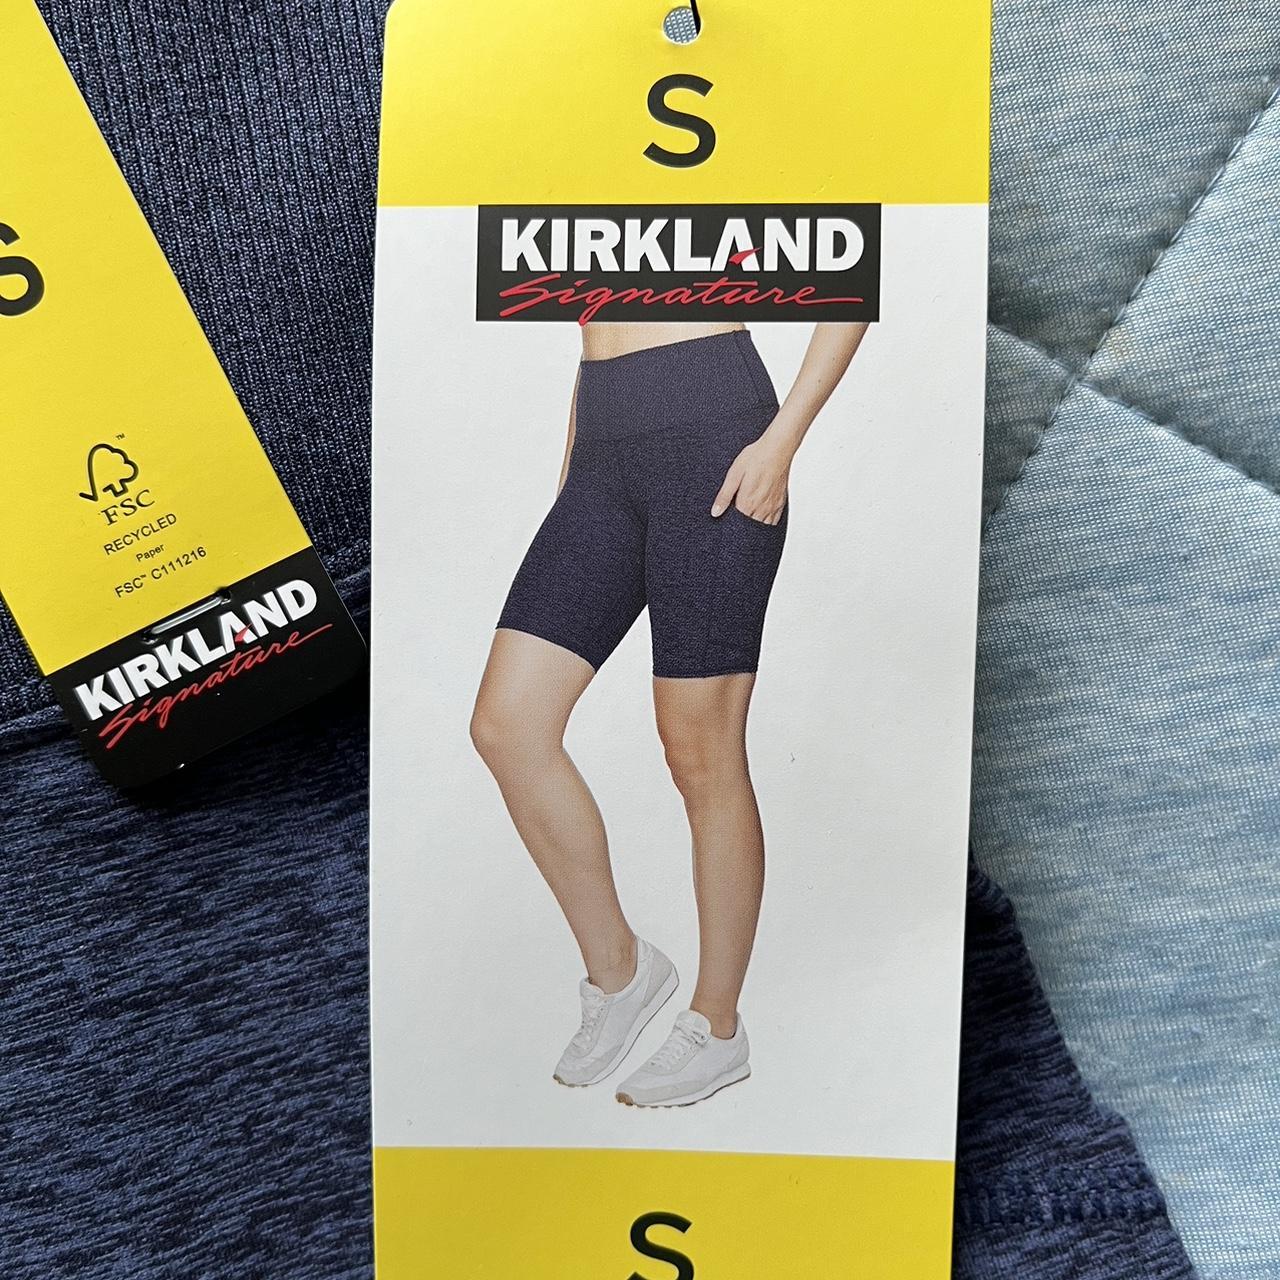 Kirkland Signature ladies brushed bike shorts, New